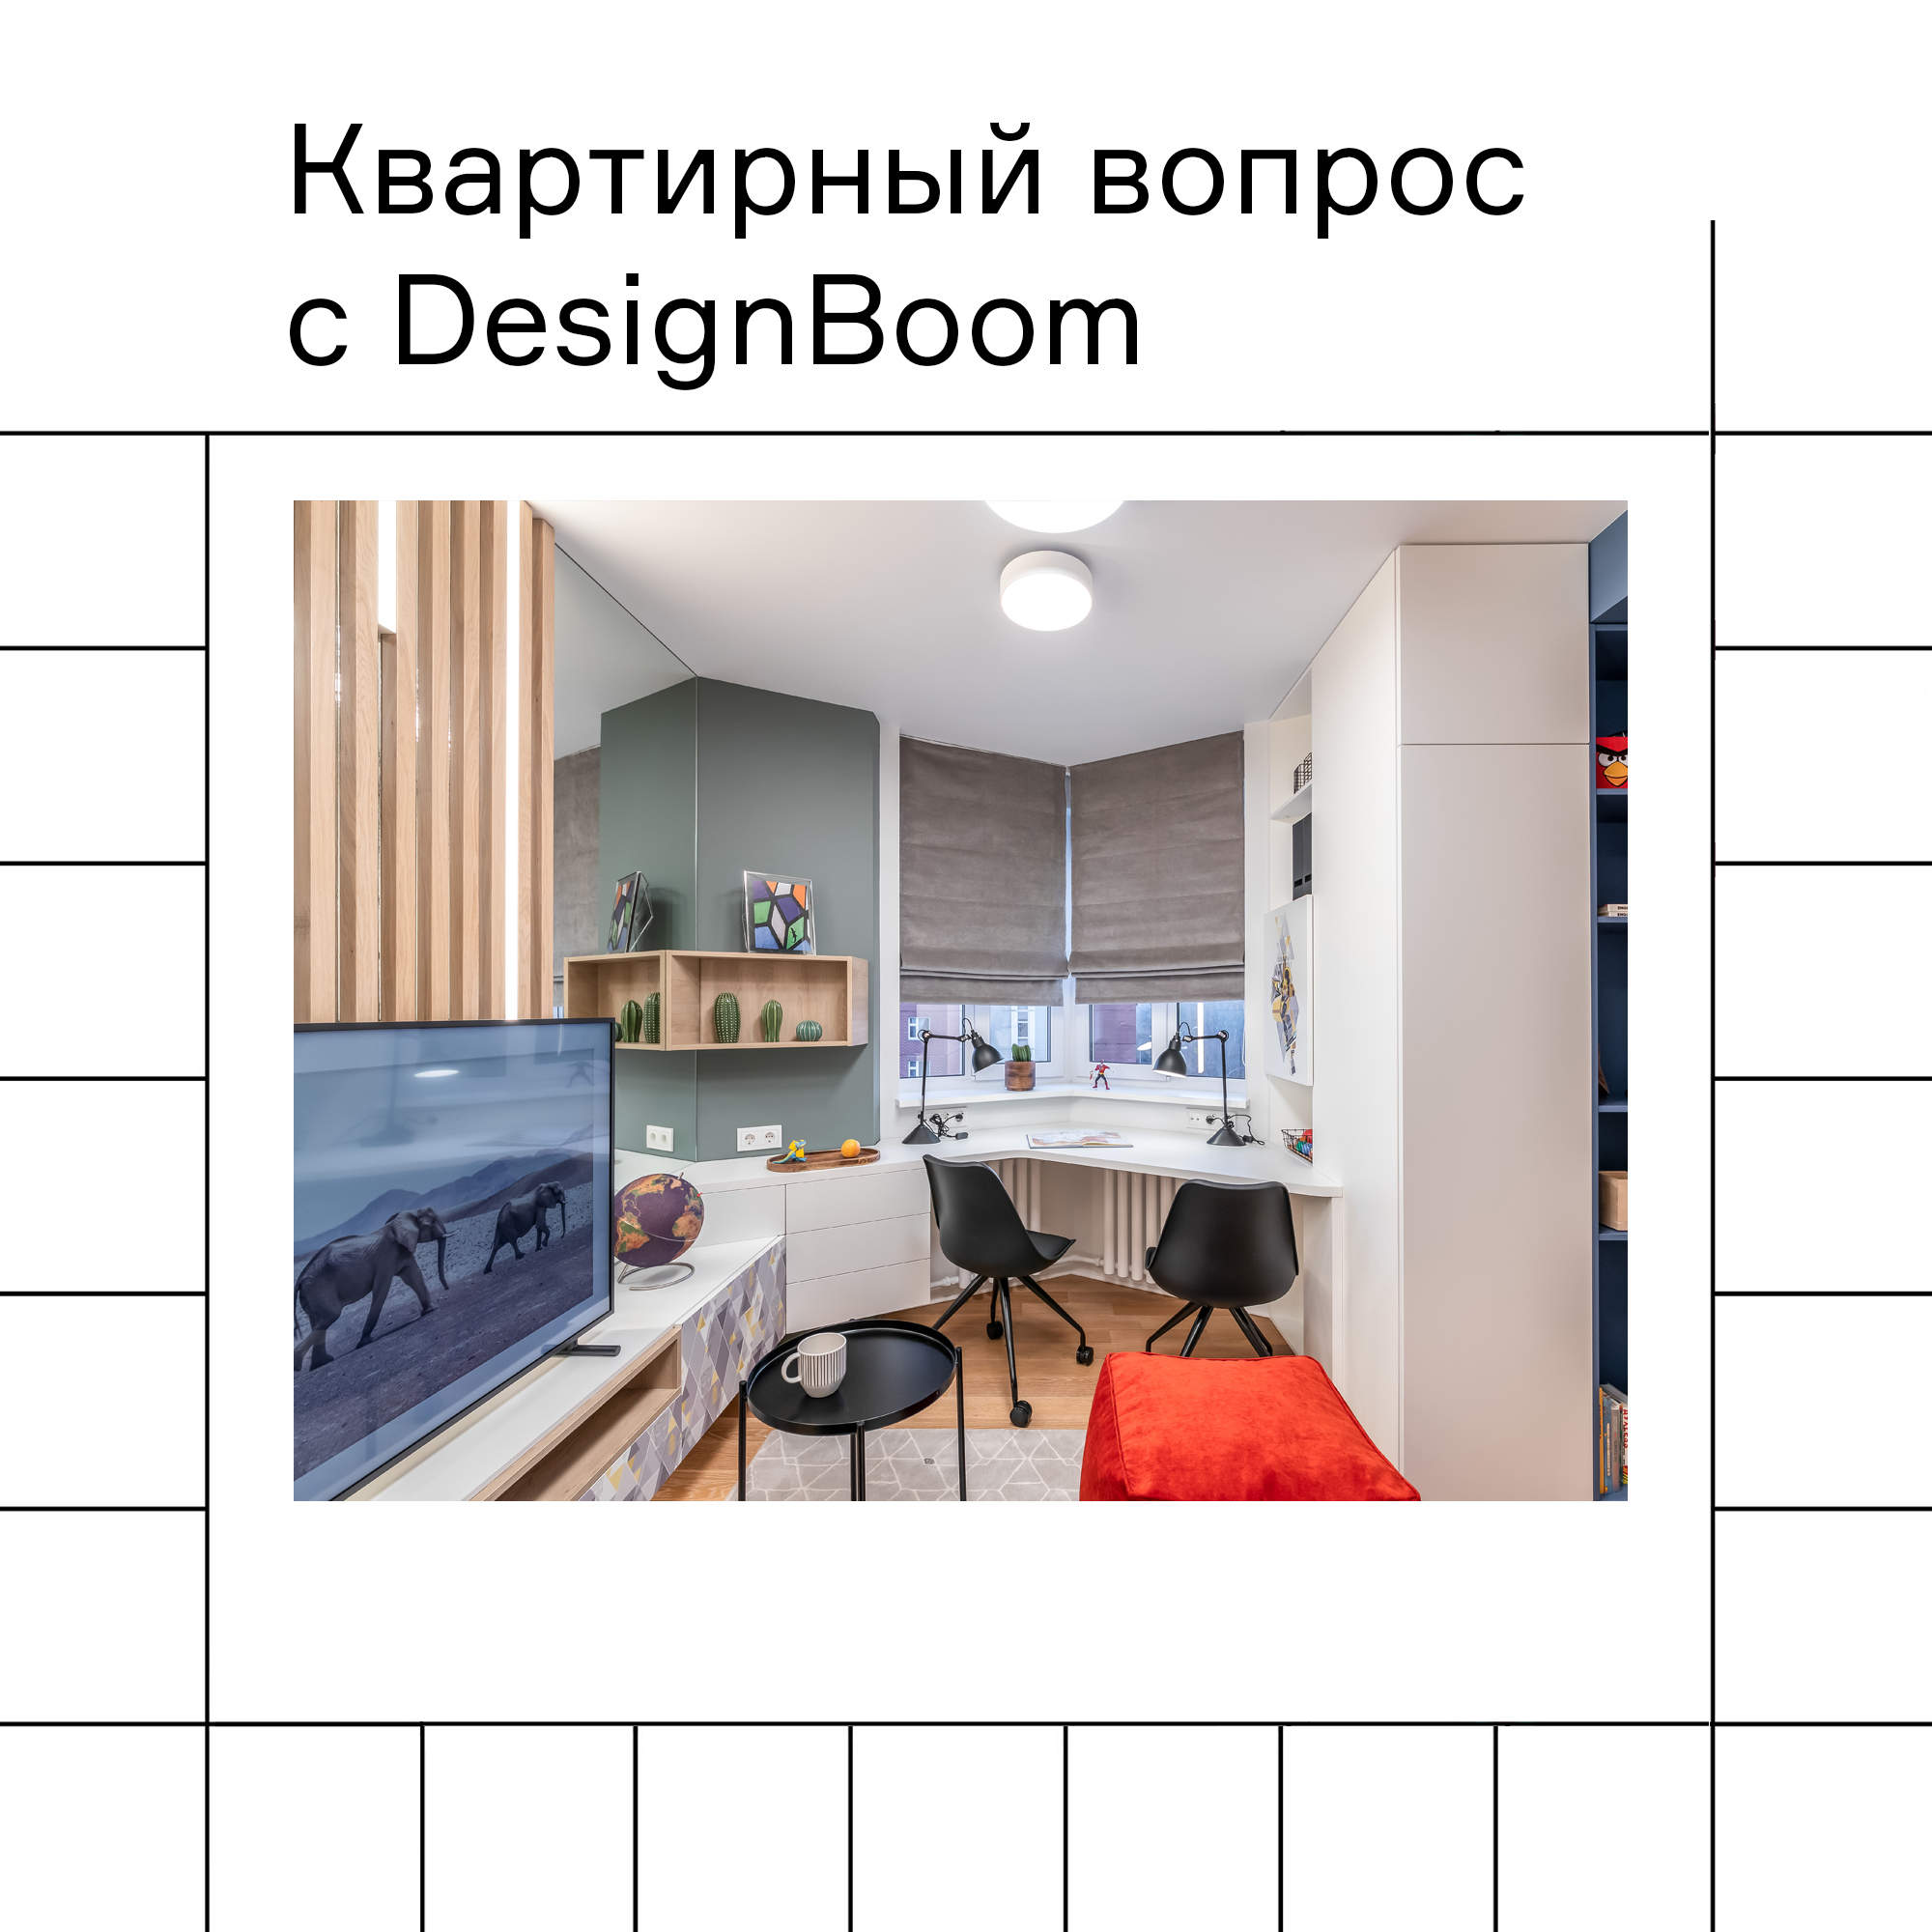 Изображение "Квартирный вопрос" с участием DesignBoom